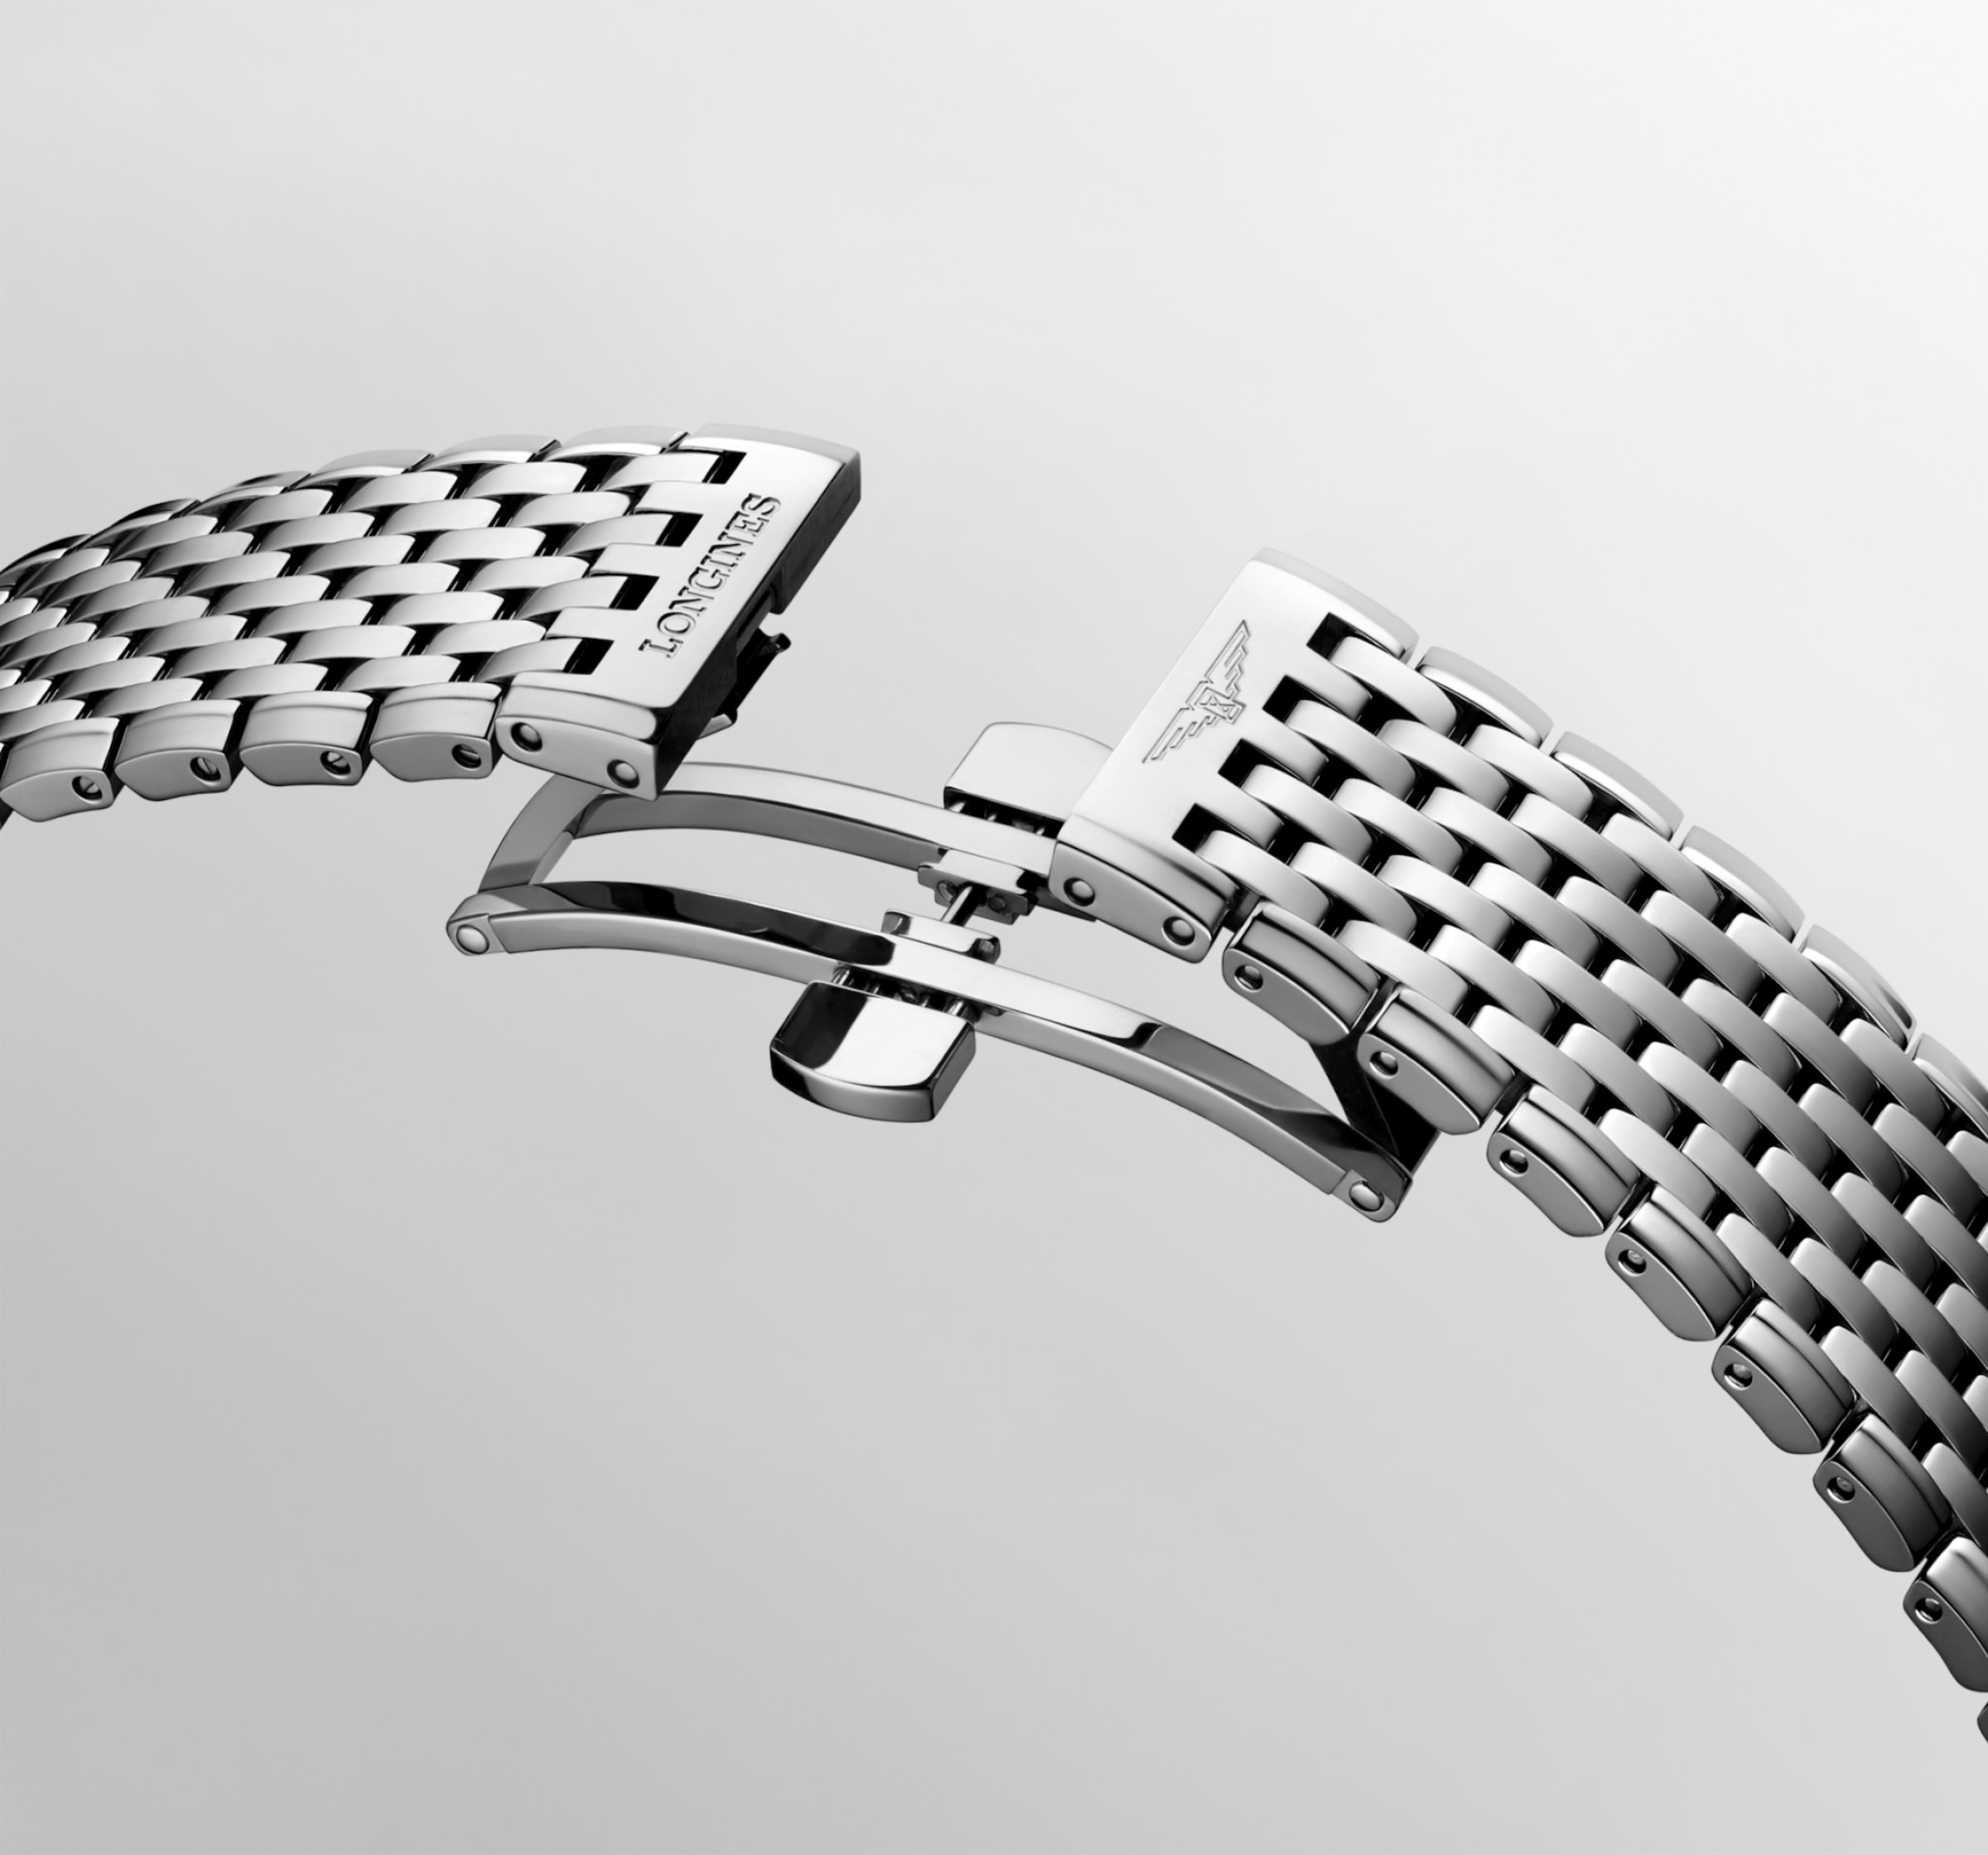 Longines LA GRANDE CLASSIQUE DE LONGINES Quartz Stainless steel Watch - L4.866.4.97.6